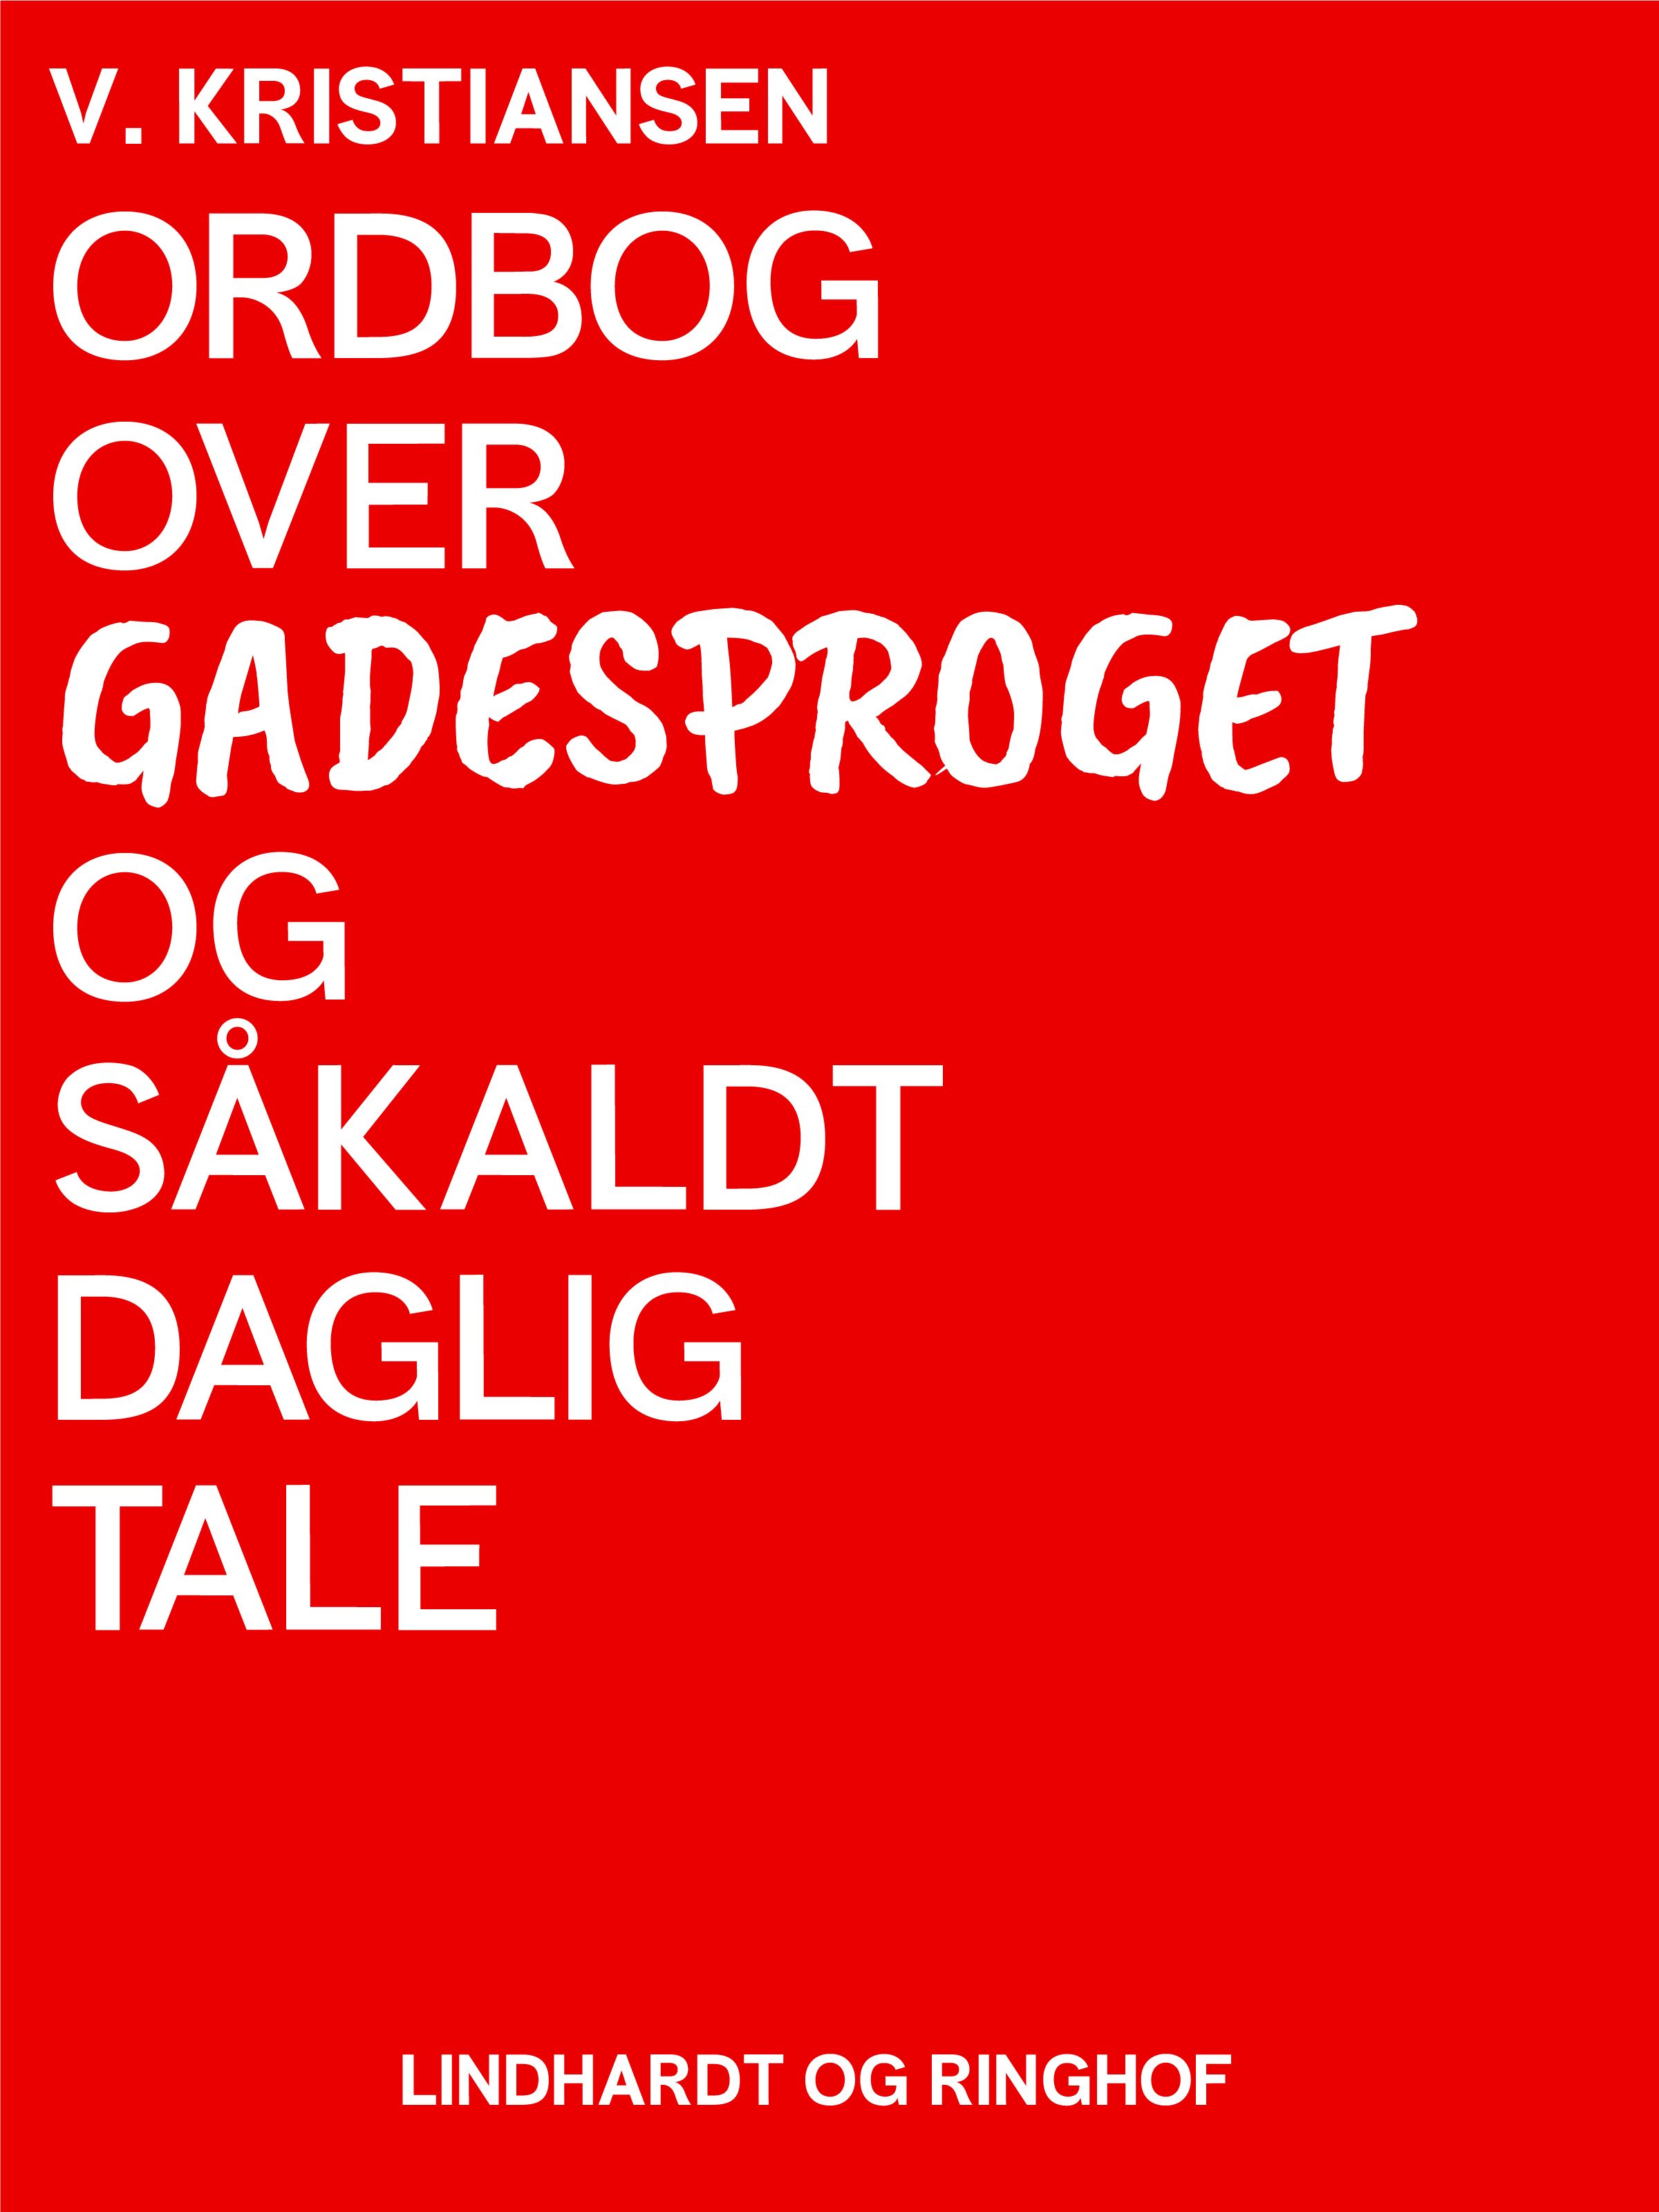 Ordbog over gadesproget og såkaldt daglig tale, e-bog af V. Kristiansen